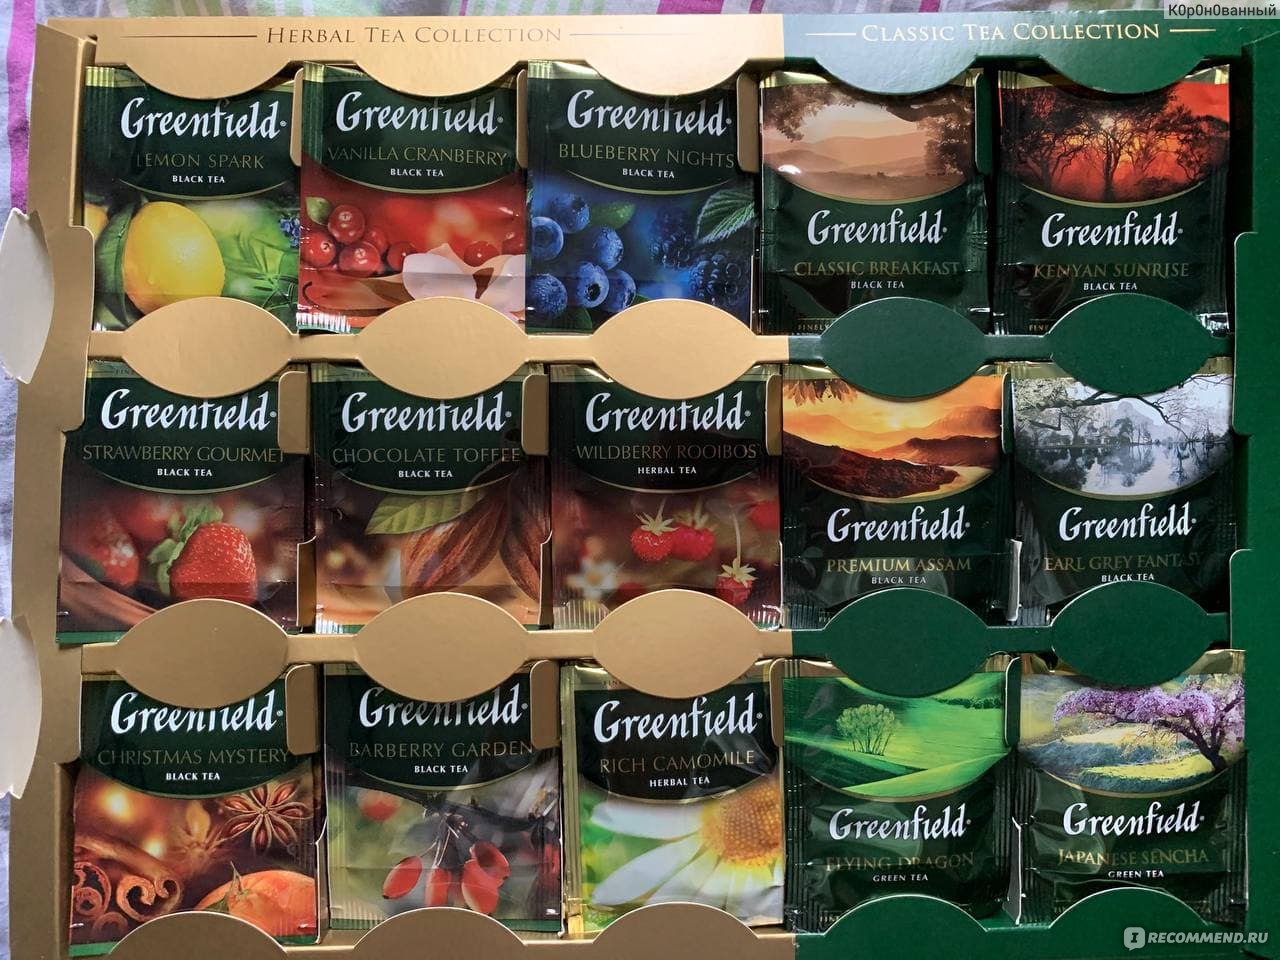 Greenfield Pyramid Tea collection ассорти 6 видов